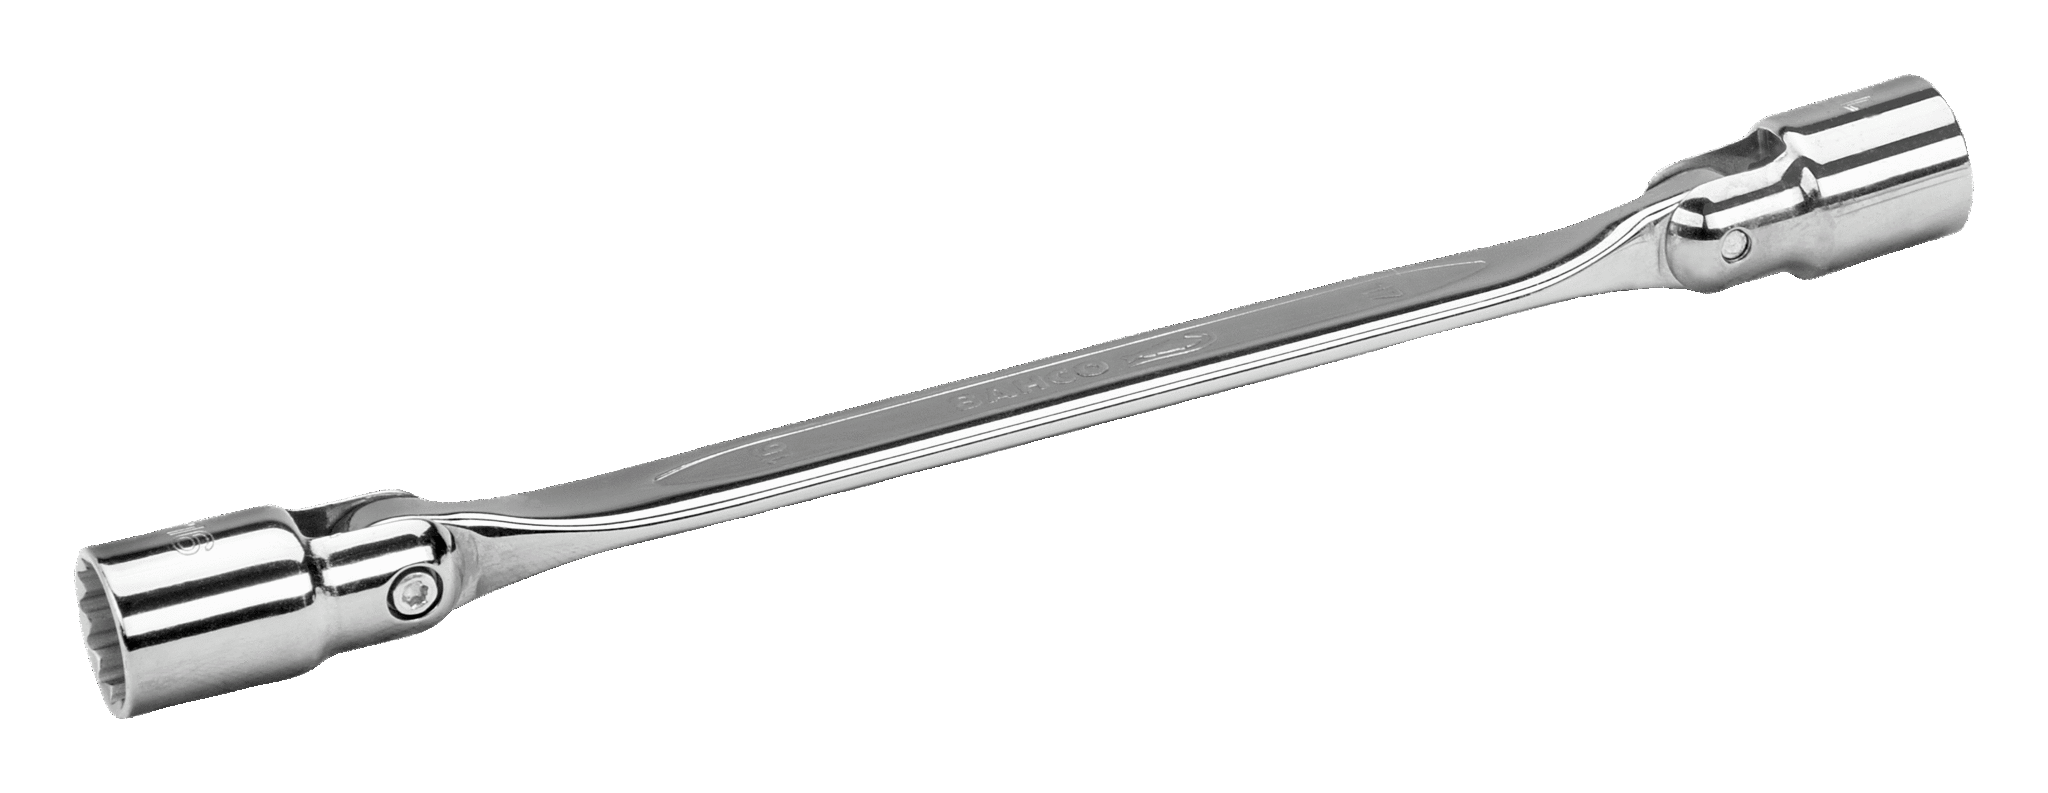 Двойной торцевой ключ метрических размеров с шарнирной головкой BAHCO 4040M-13-17